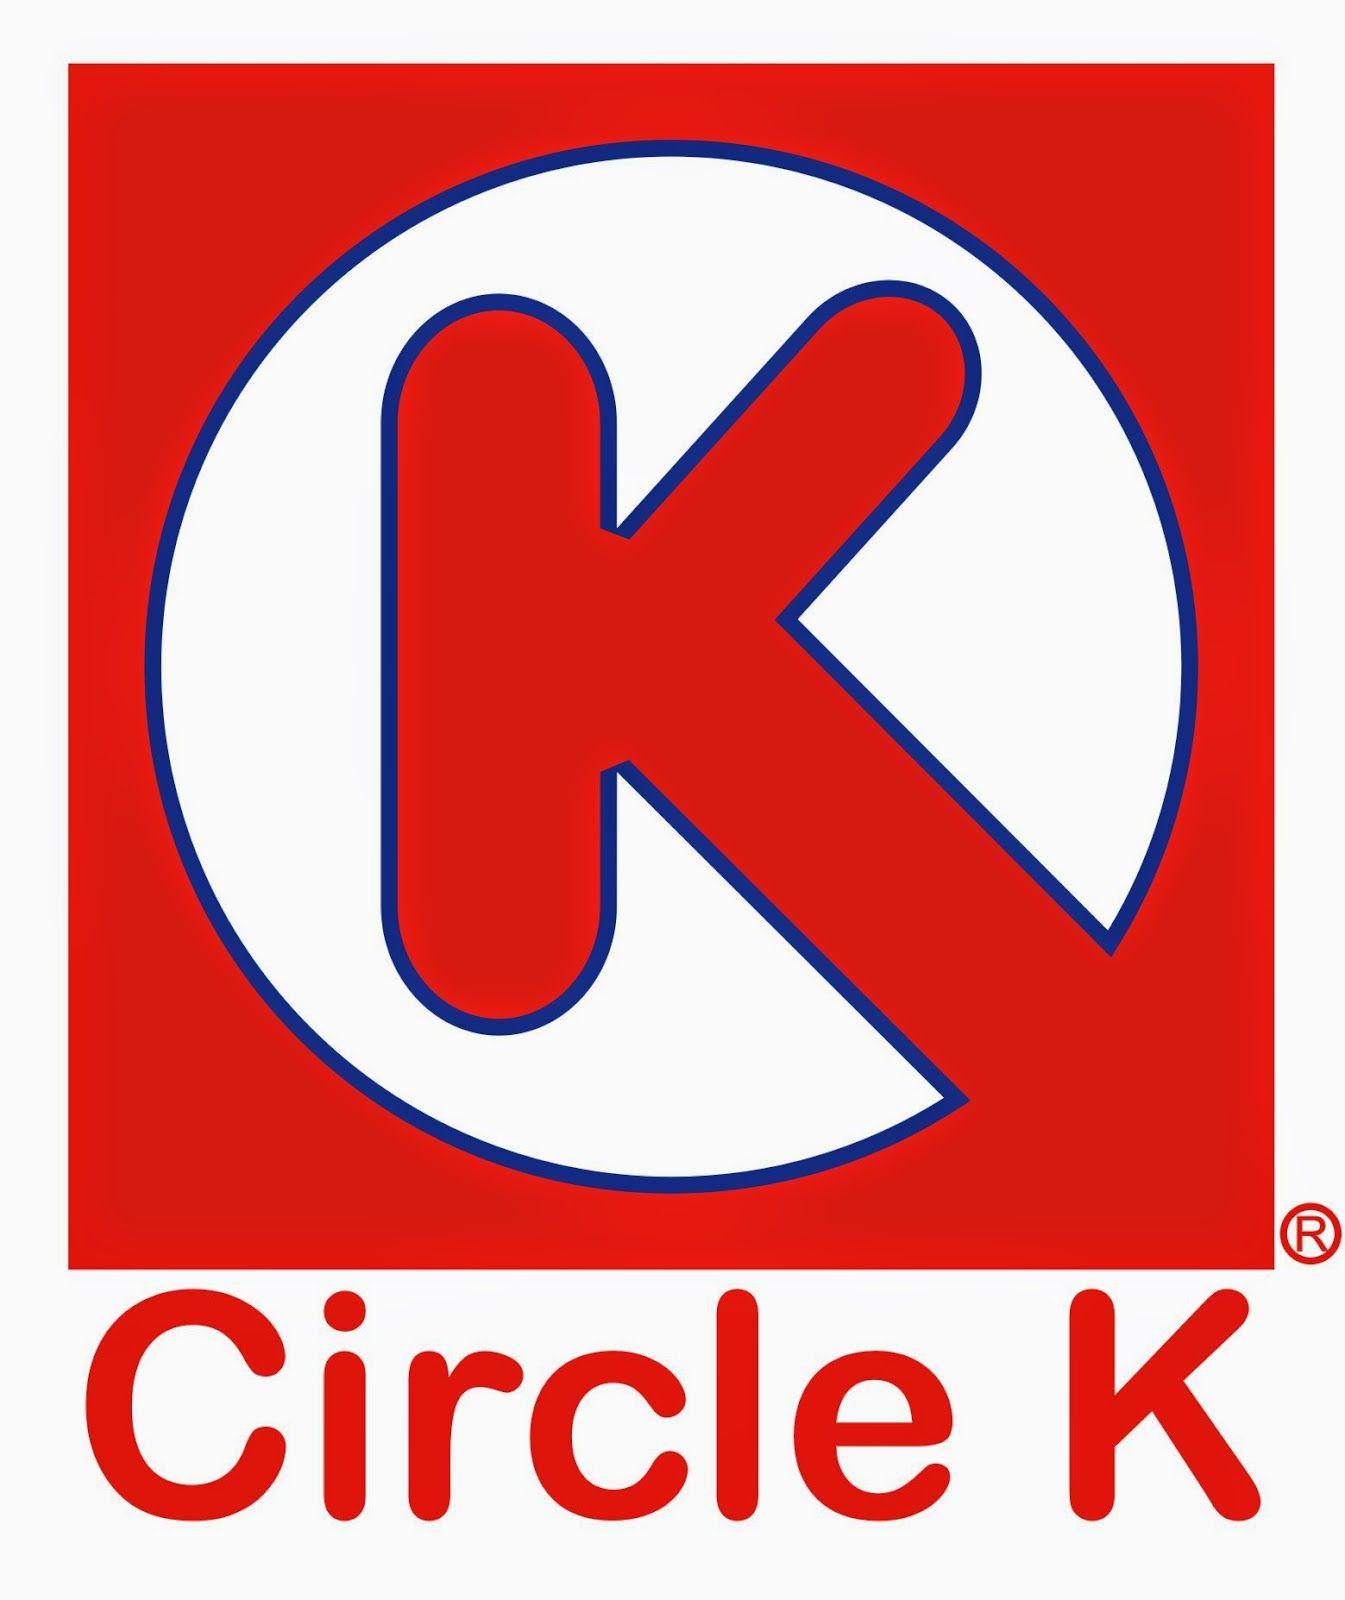 K in Red Rectangle Logo - Circle k Logos